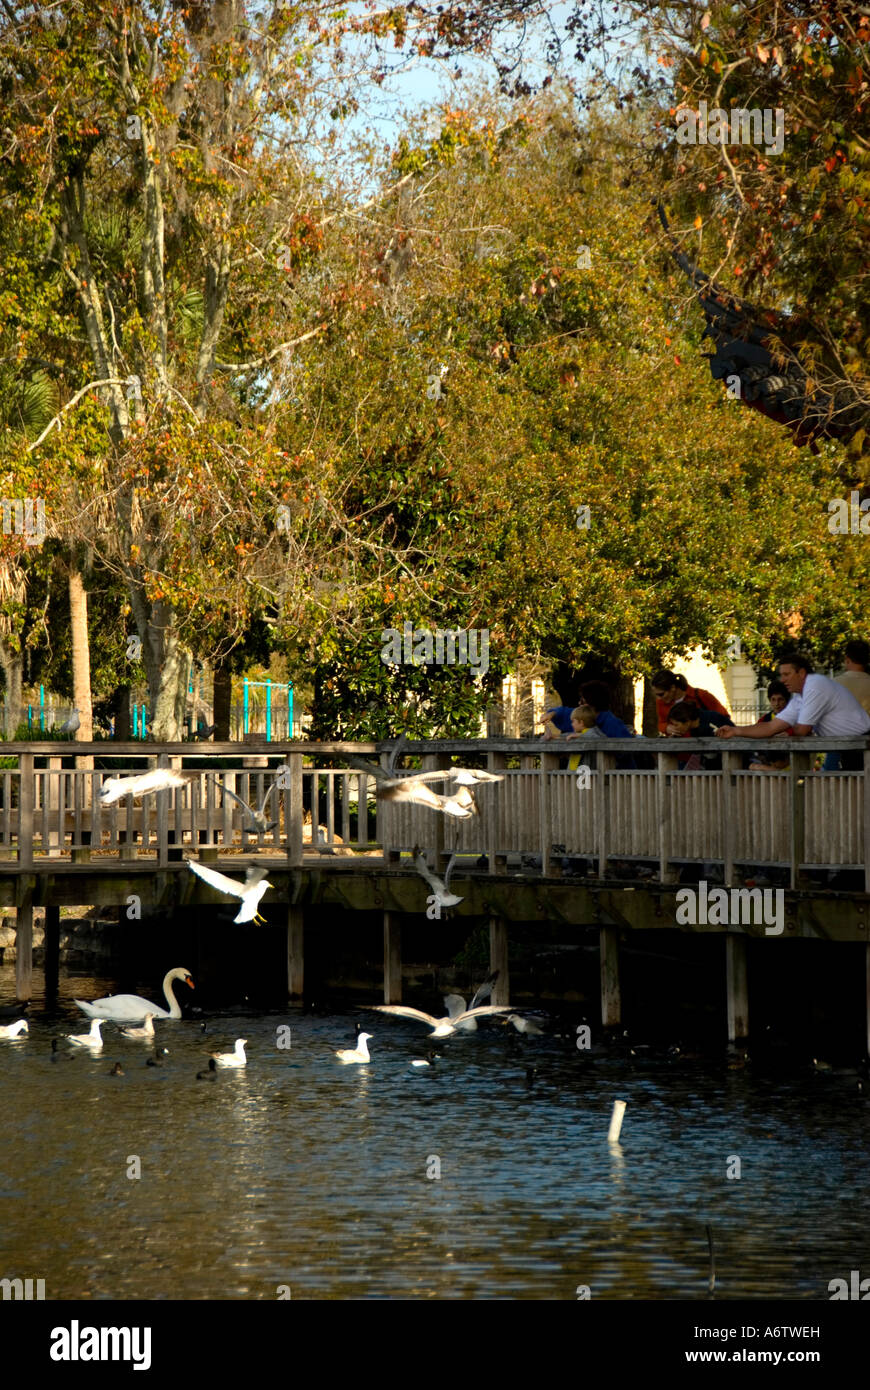 Orlando FloridaLake Eola Park feeding birds Stock Photo